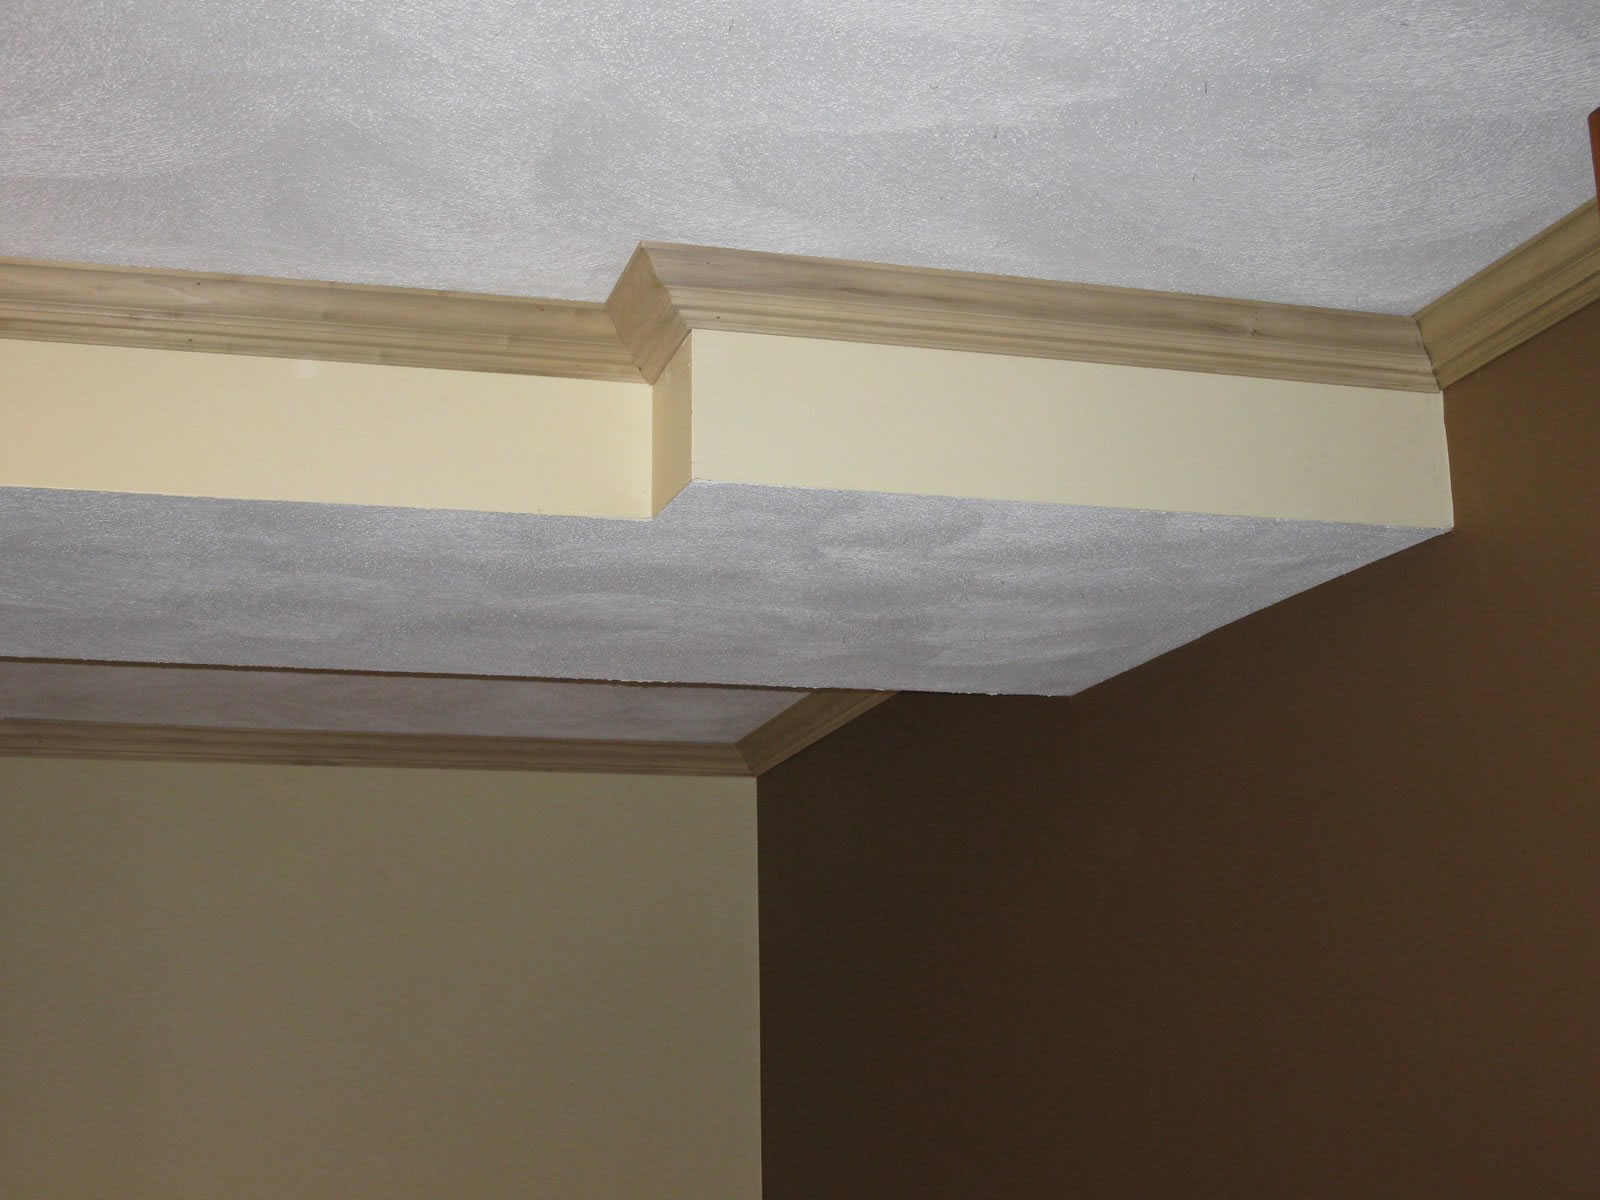 Dùng sơn chống thấm là một trong những cách hiệu quả để tránh đột cho trần nhà